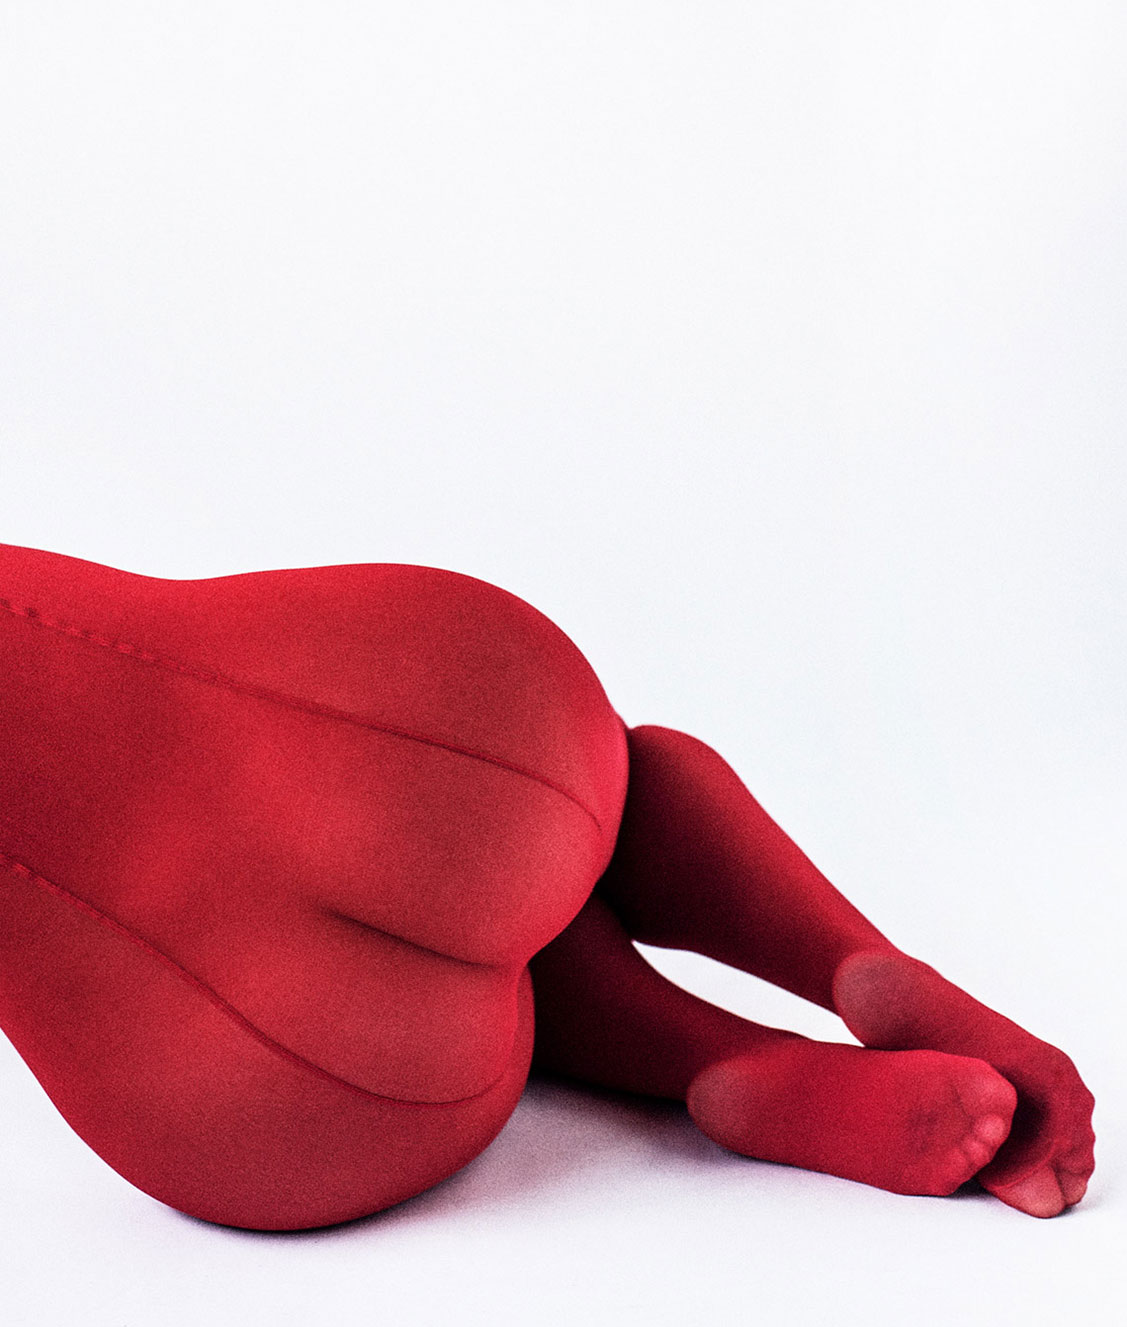 Red / Olivia Norella by Cory Vanderploeg / Yume Magazine